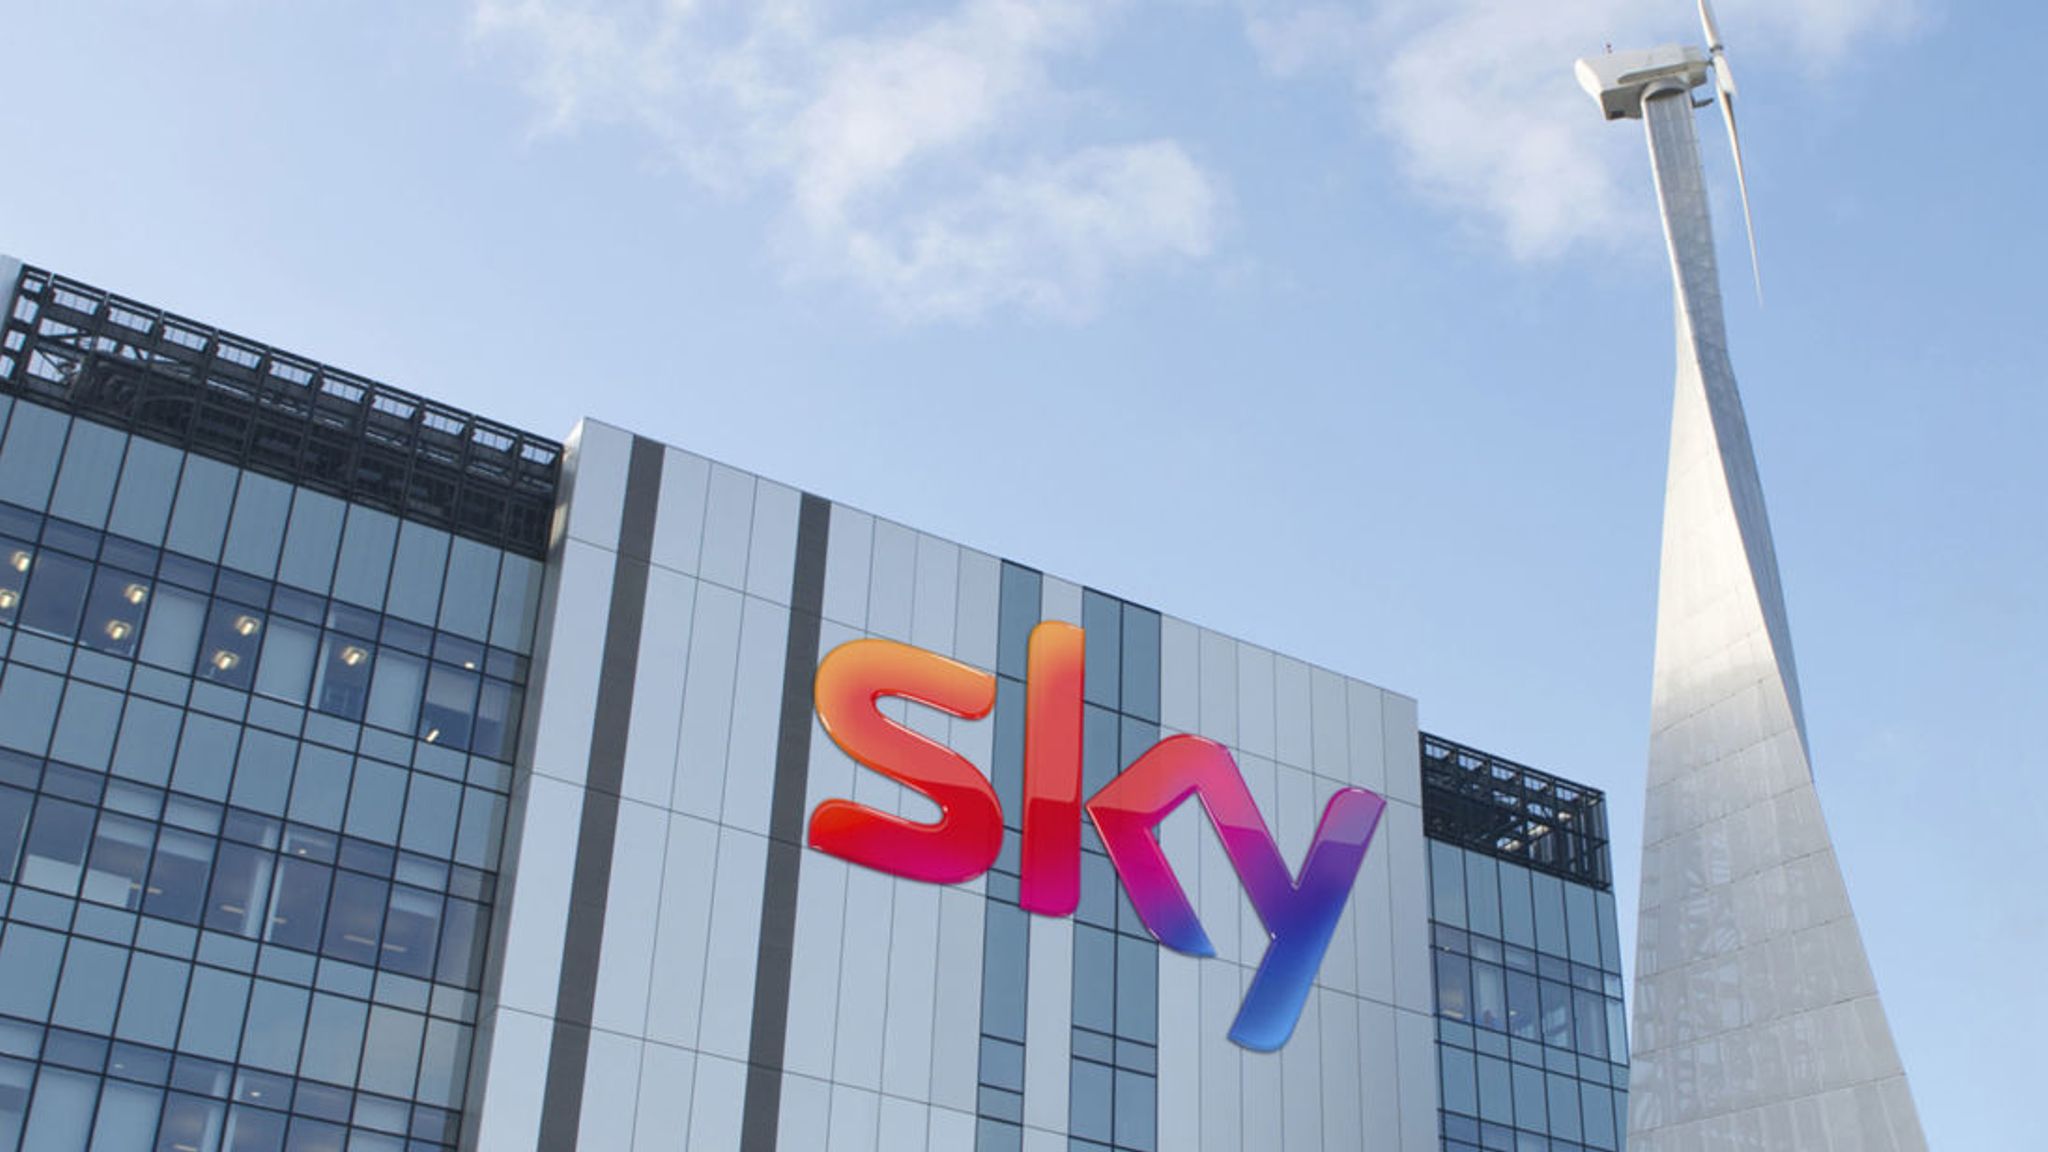 Comcast surenchérit sur Fox lors d'une vente aux enchères pour Sky, valorisant une société de médias à 29,7 milliards de livres sterling | Nouvelles d'affaires | Nouvelles du ciel